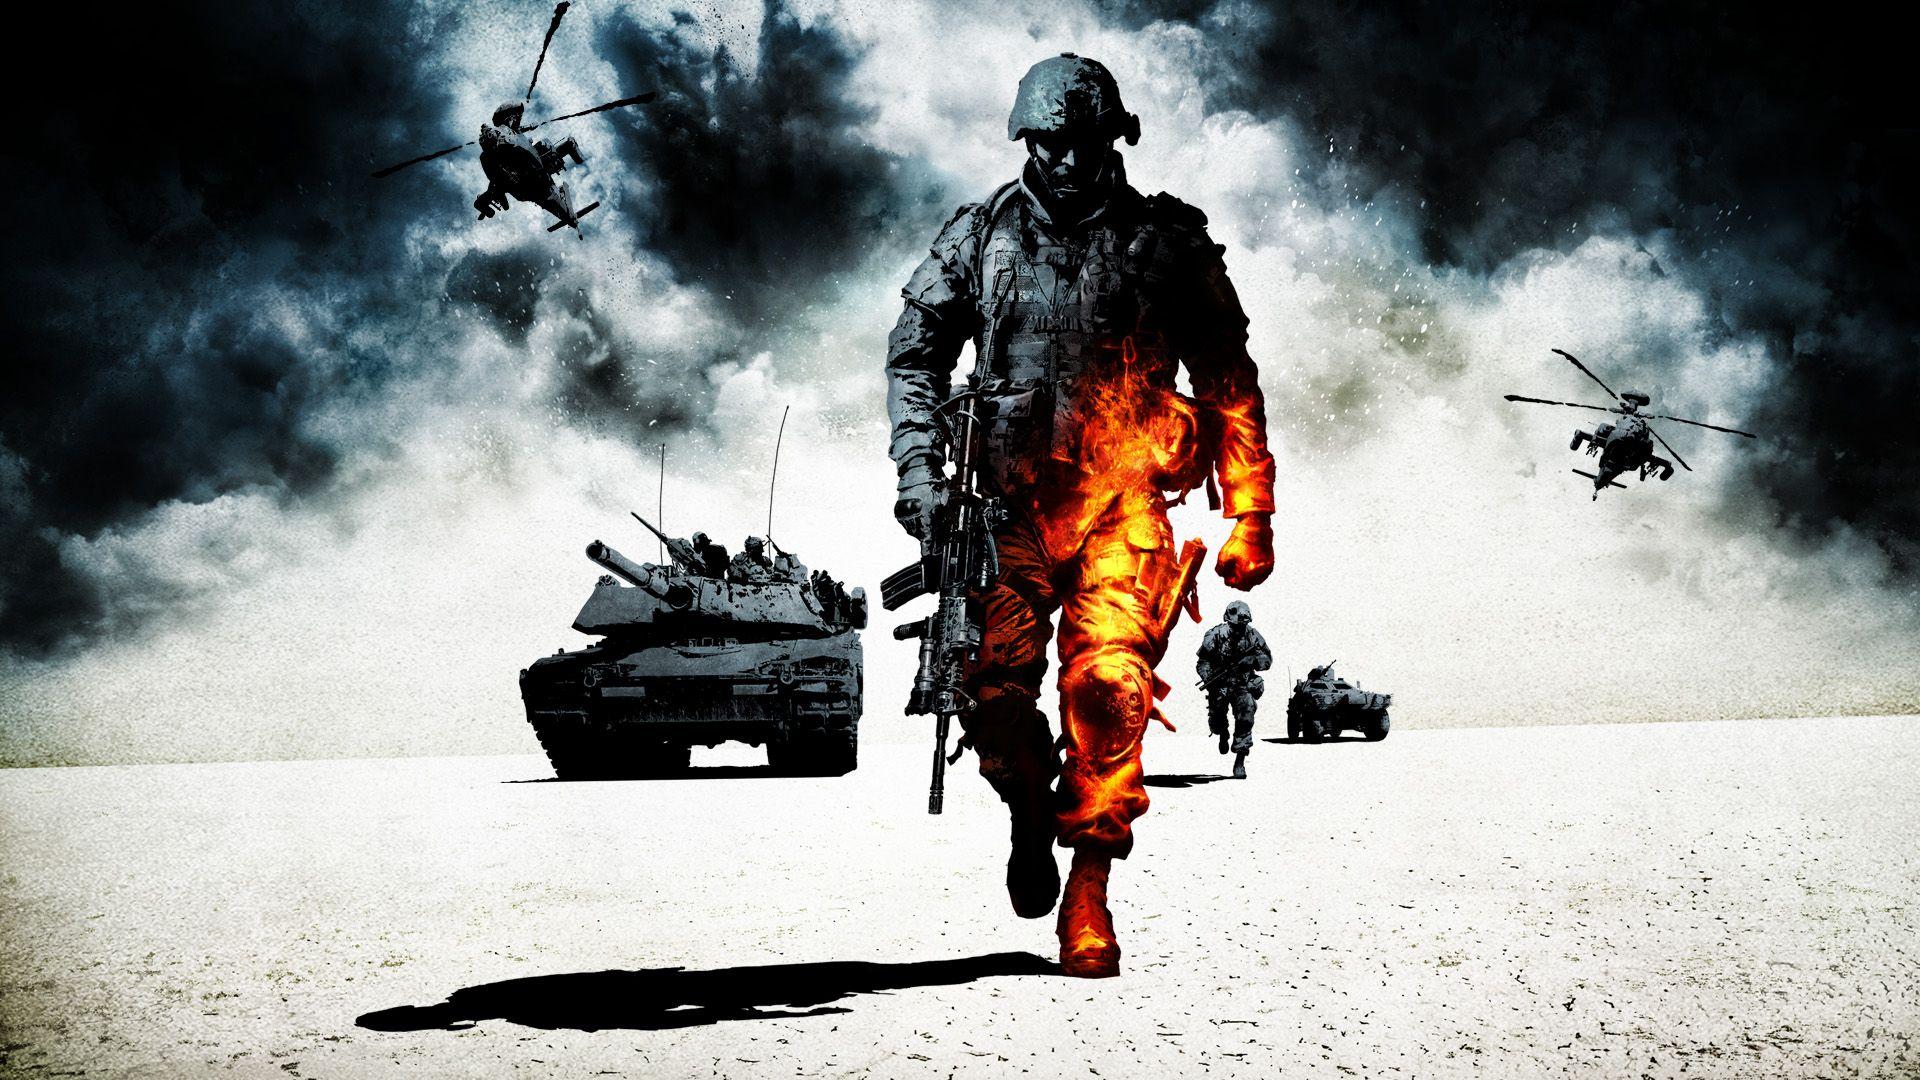 Battlefield 2 Wallpapers Top Free Battlefield 2